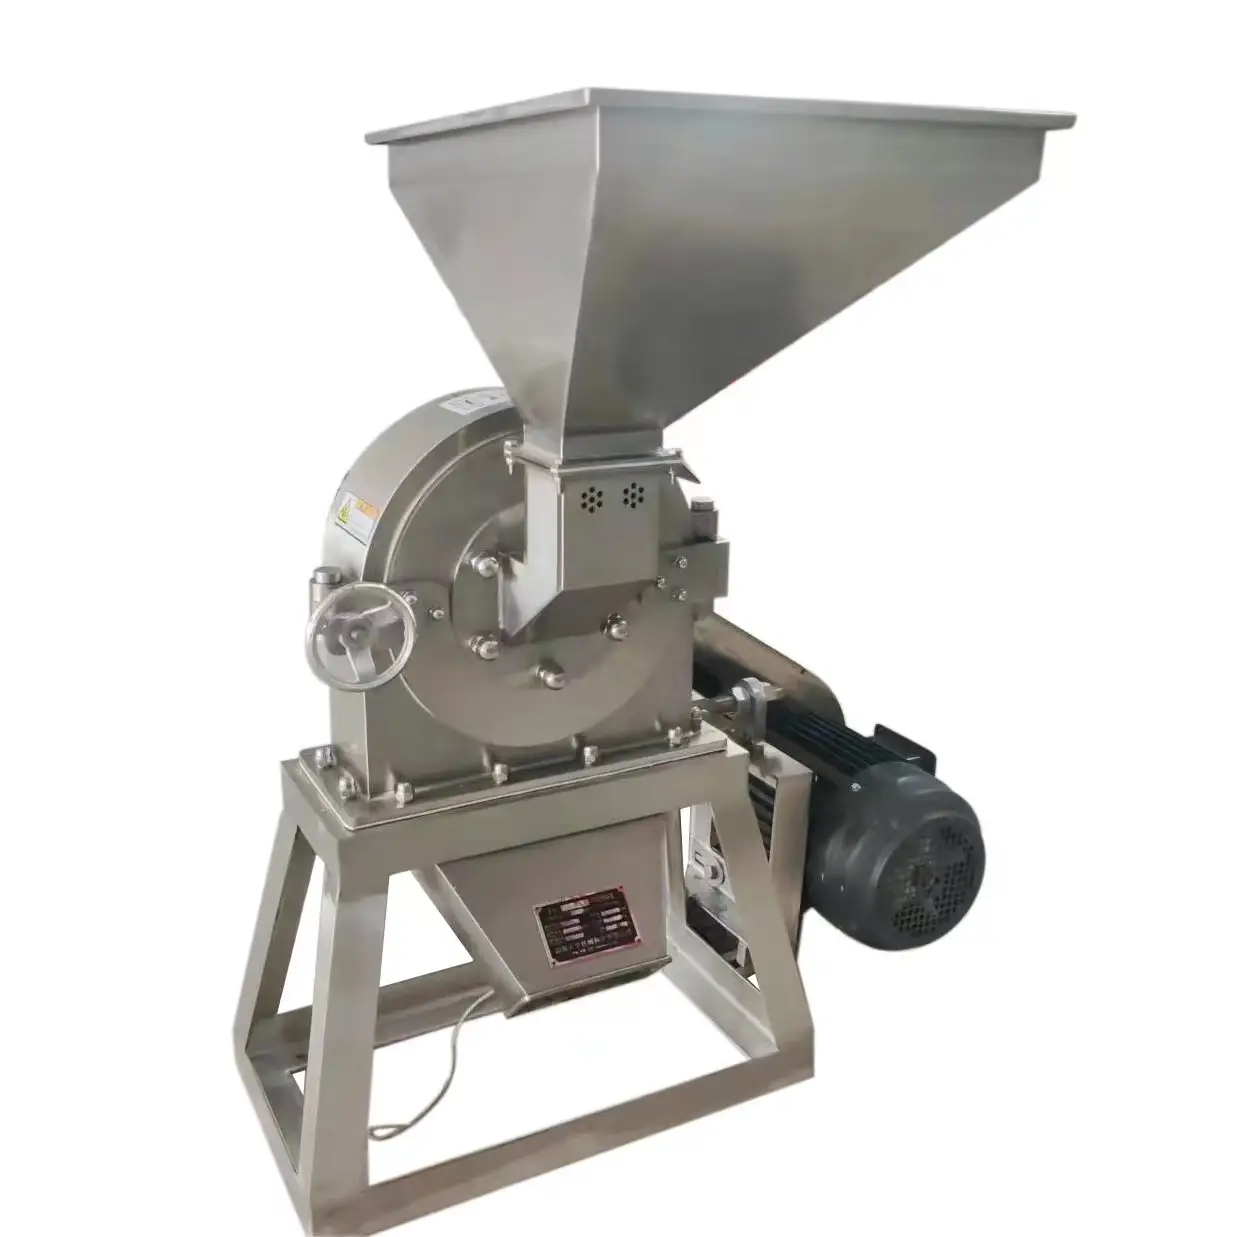 FS160 máquina de moer alimentos em aço inoxidável para pequenas empresas, tempero, arroz, milho, sal, açúcar, moagem de grãos